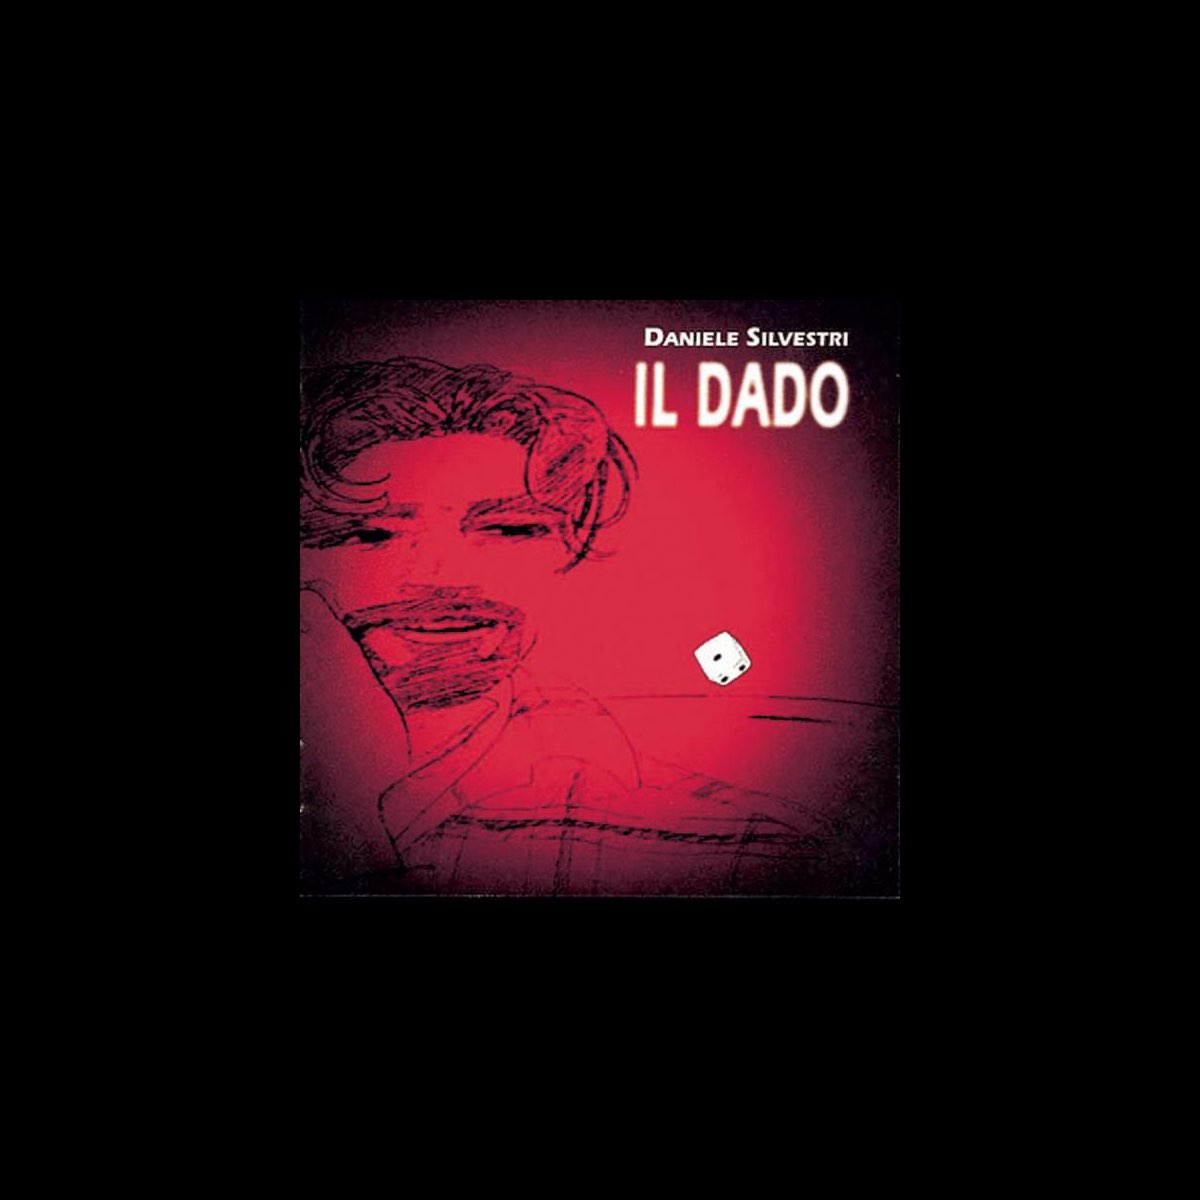 Il Dado by Daniele Silvestri on Apple Music